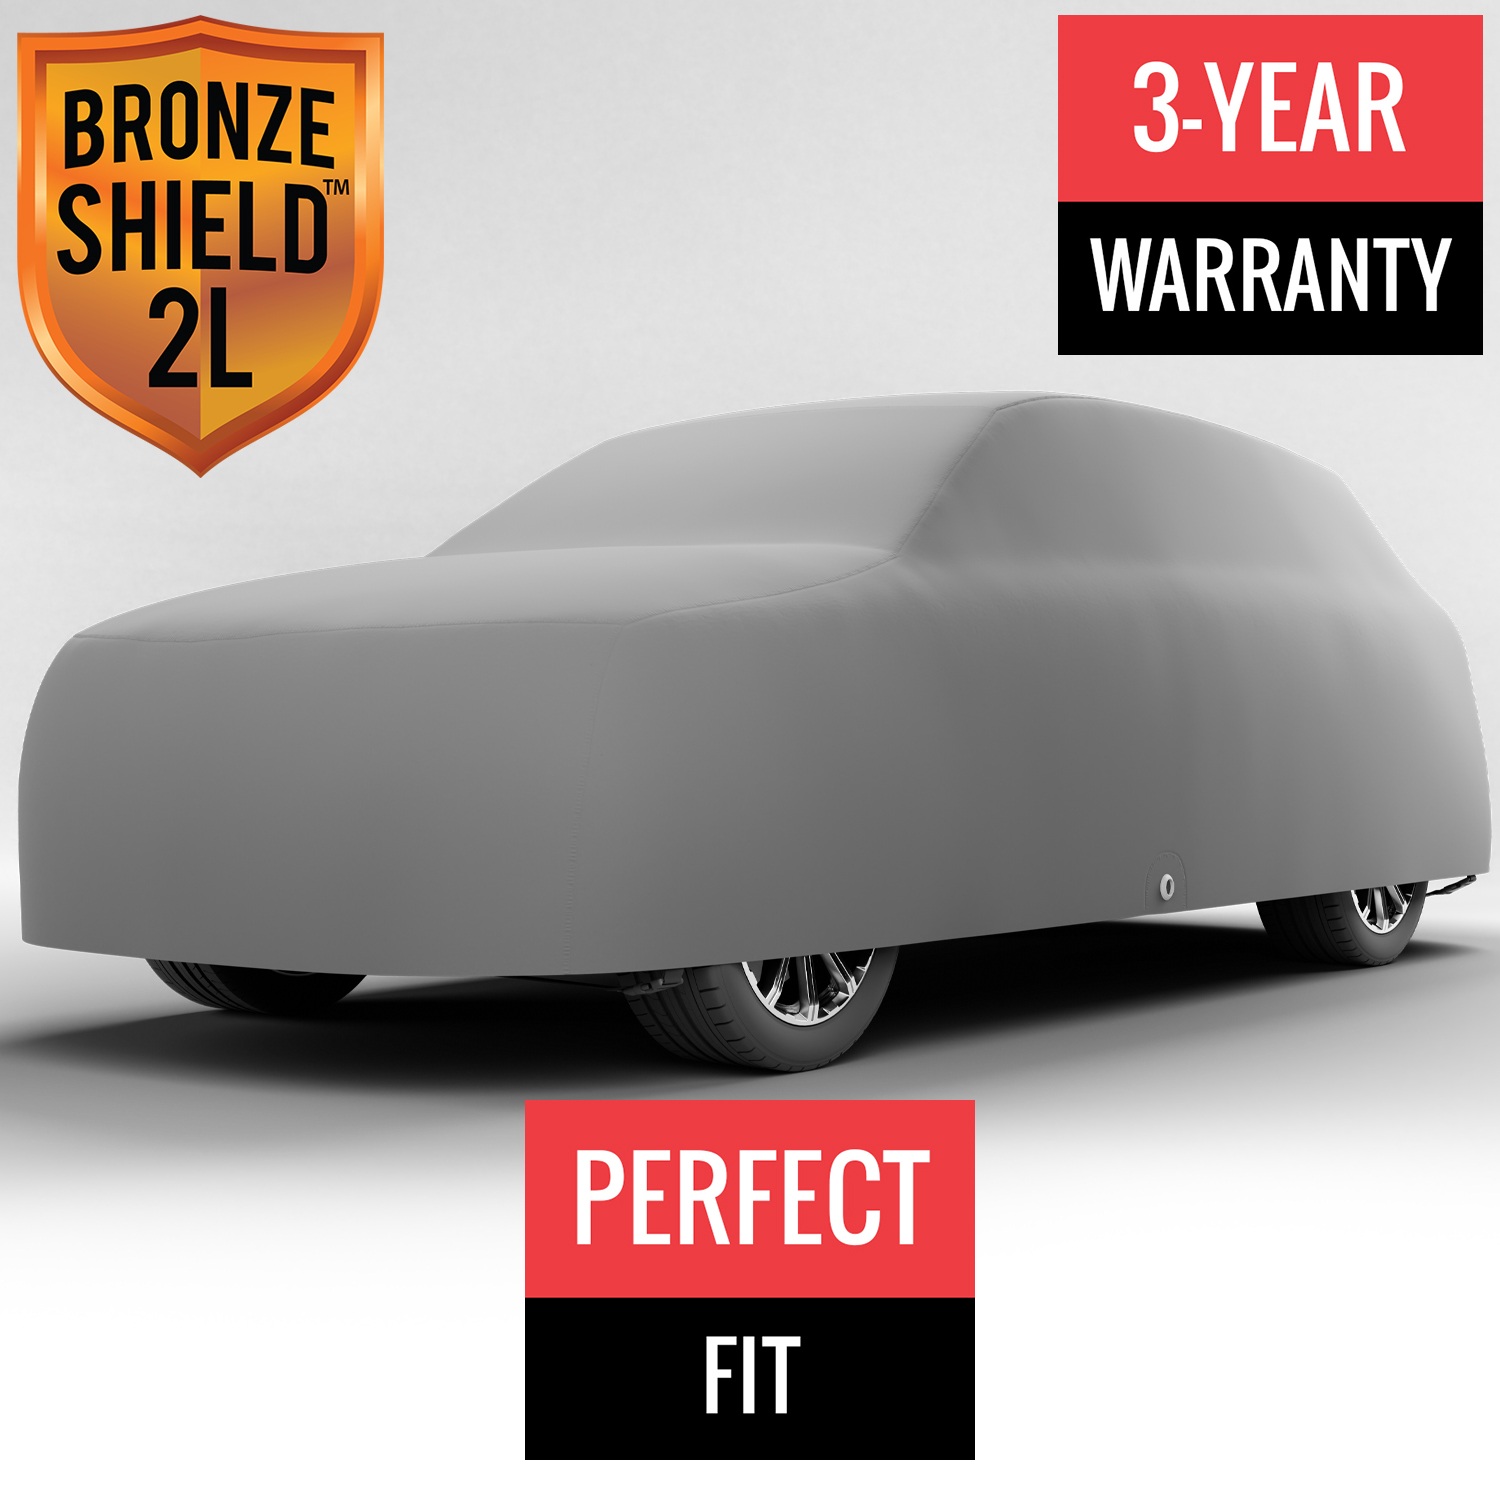 Bronze Shield 2L - Car Cover for Mazda CX-9 2016 SUV 4-Door